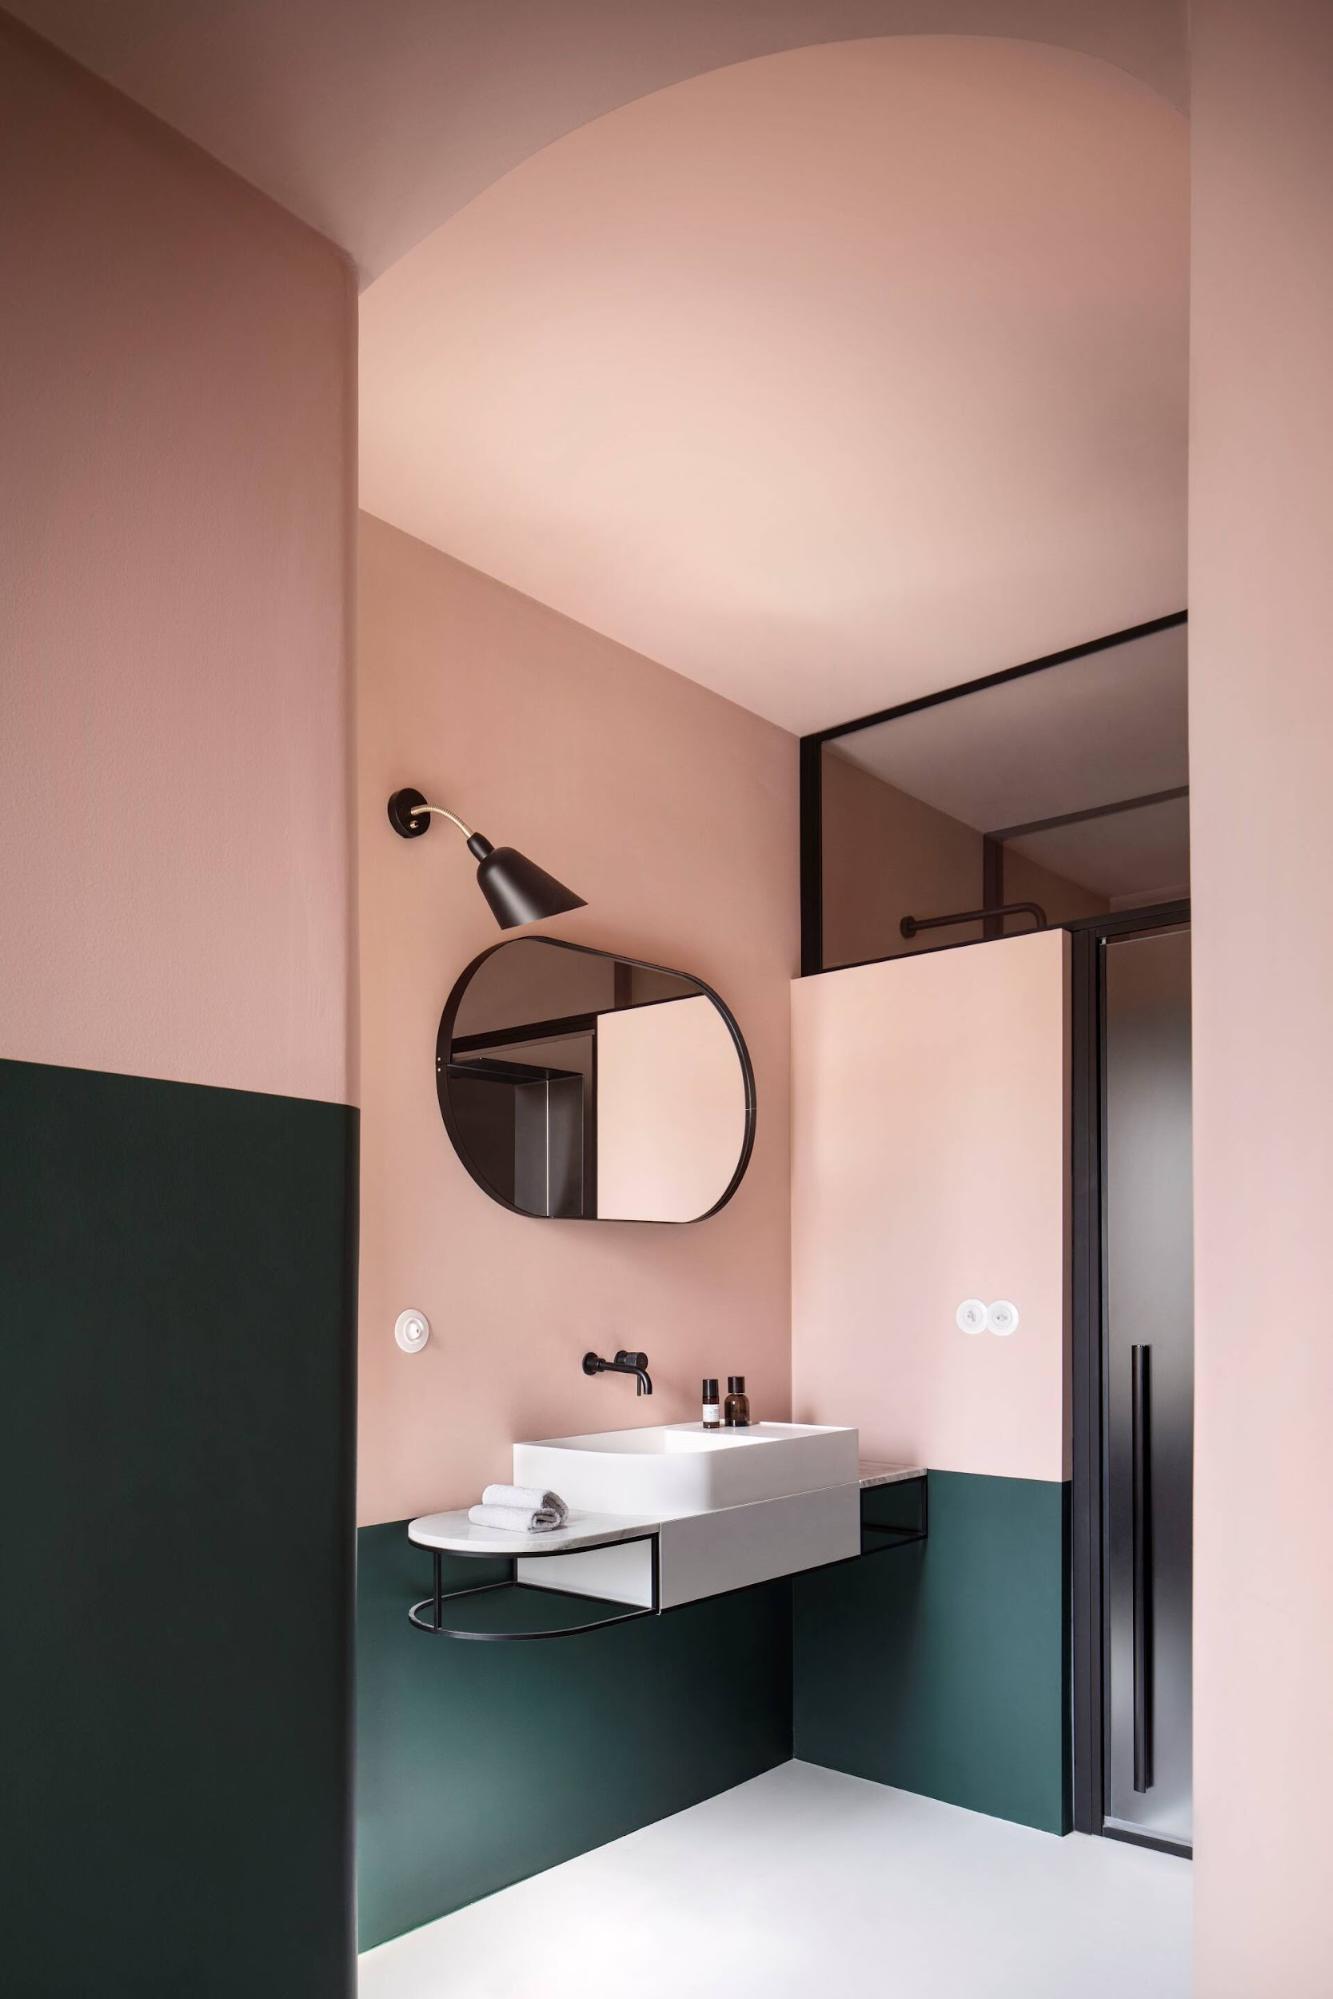 Nhà vệ sinh gây ấn tượng với sự kết hợp giữa 2 gam màu xanh - hồng đẹp mắt mang đến không gian sạch sẽ, gọn gàng mà cũng không kém phần độc đáo